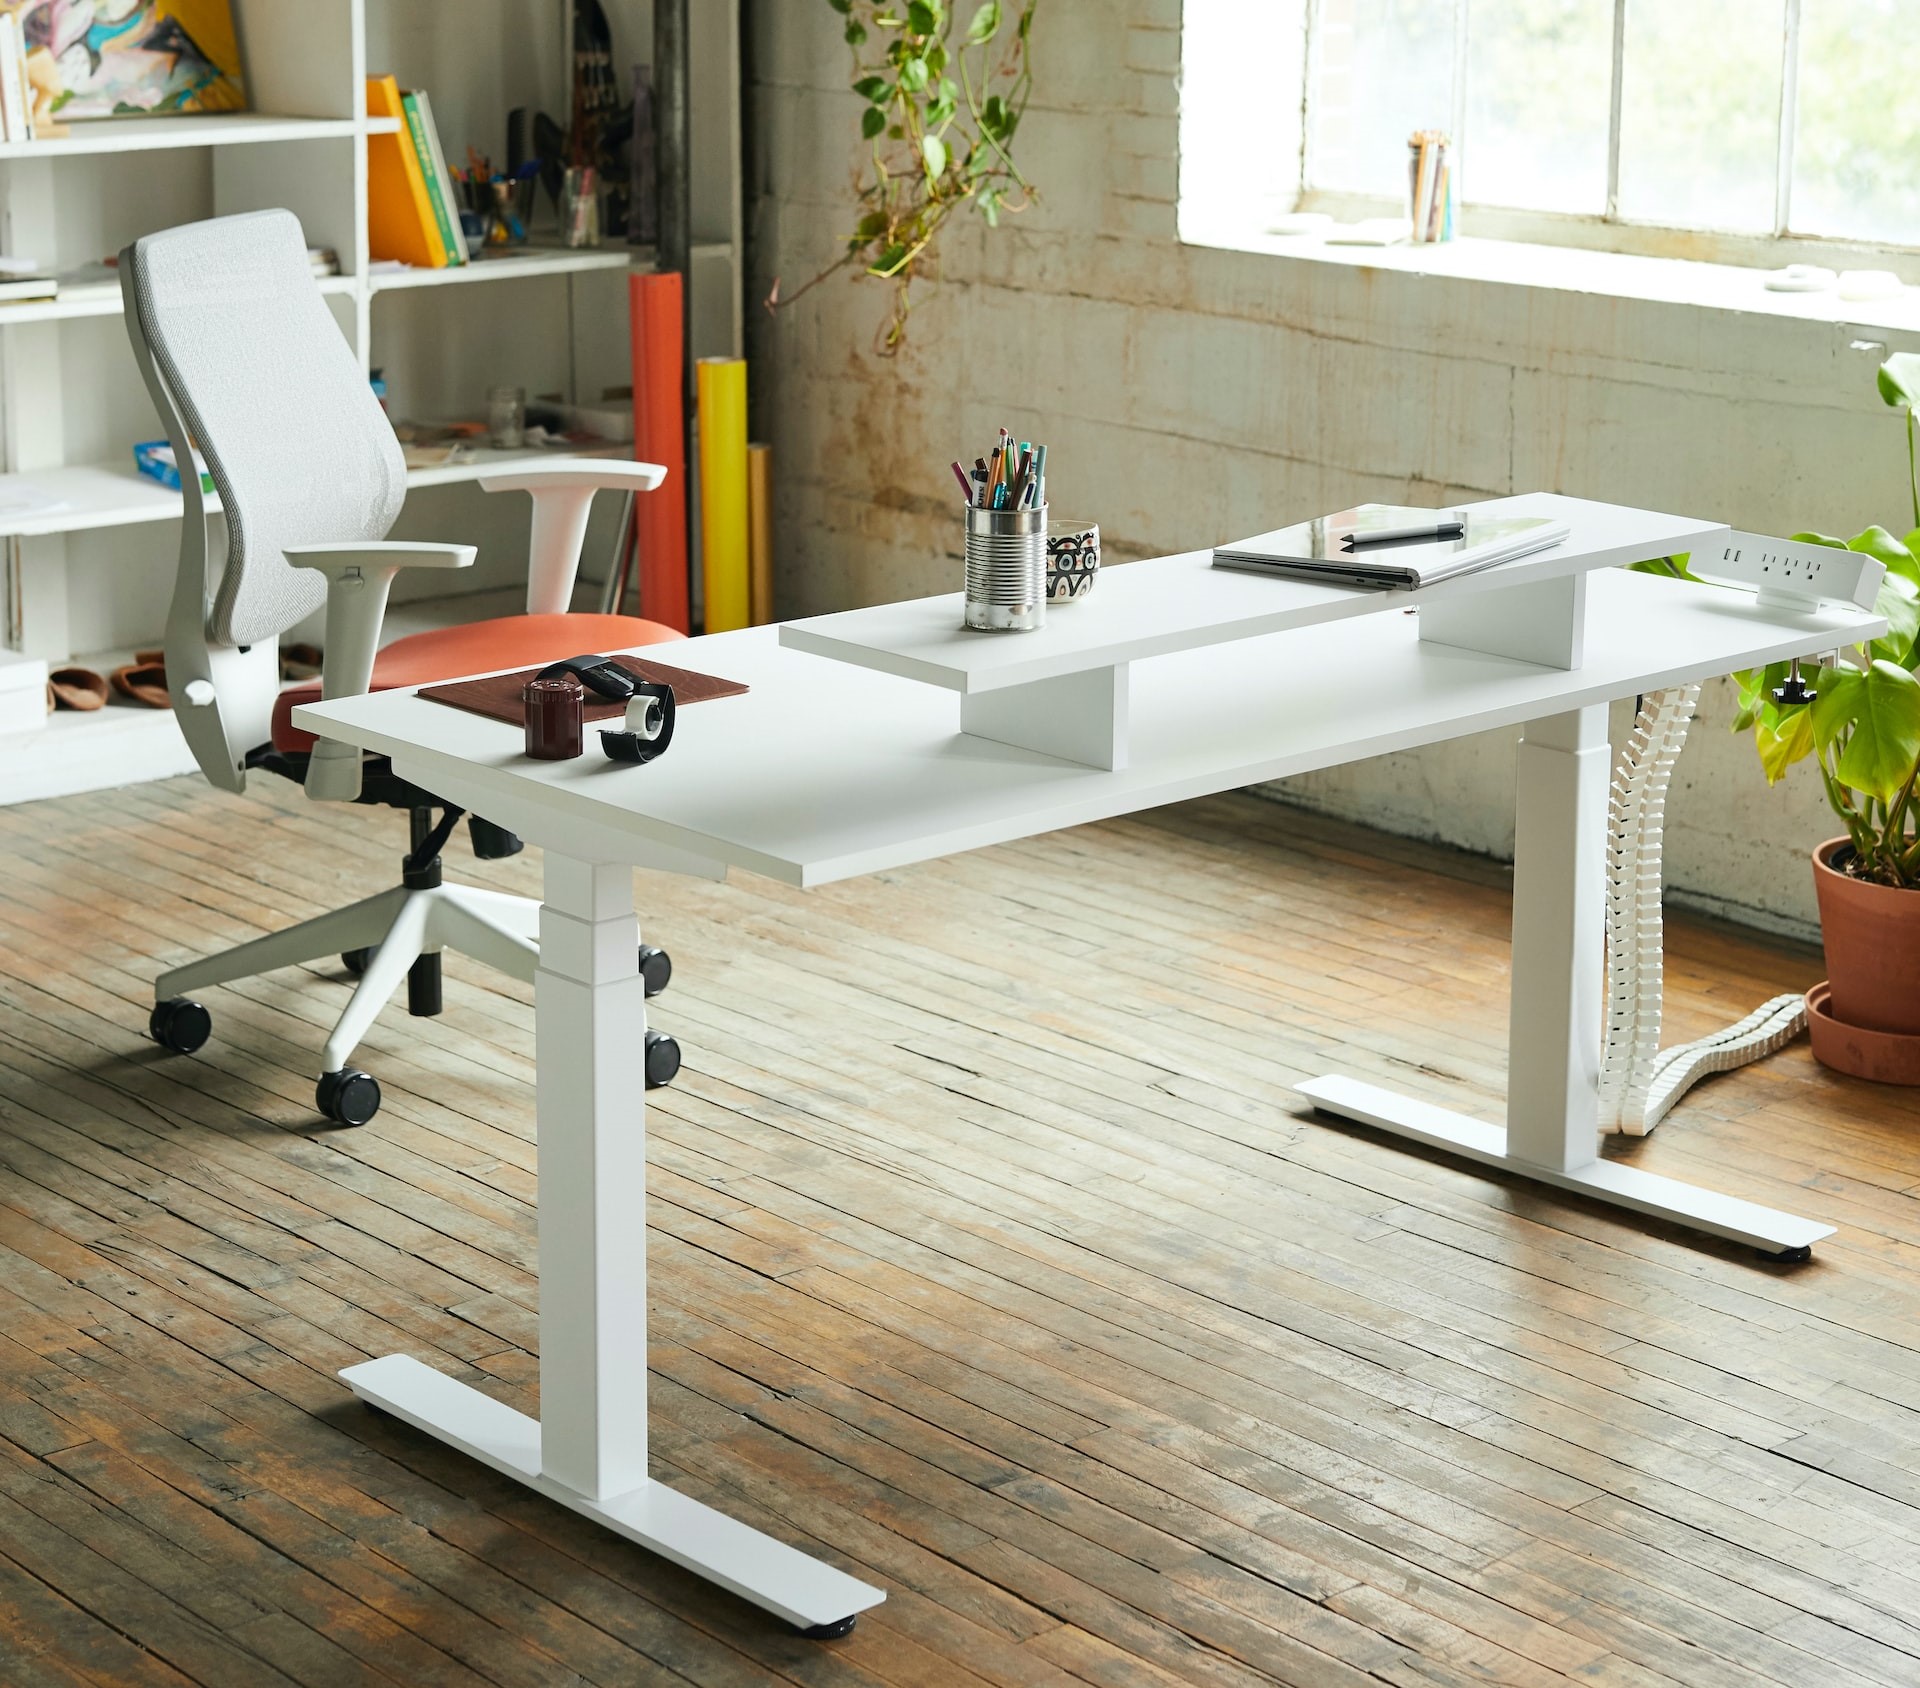 4 Health Benefits of Standing Desks